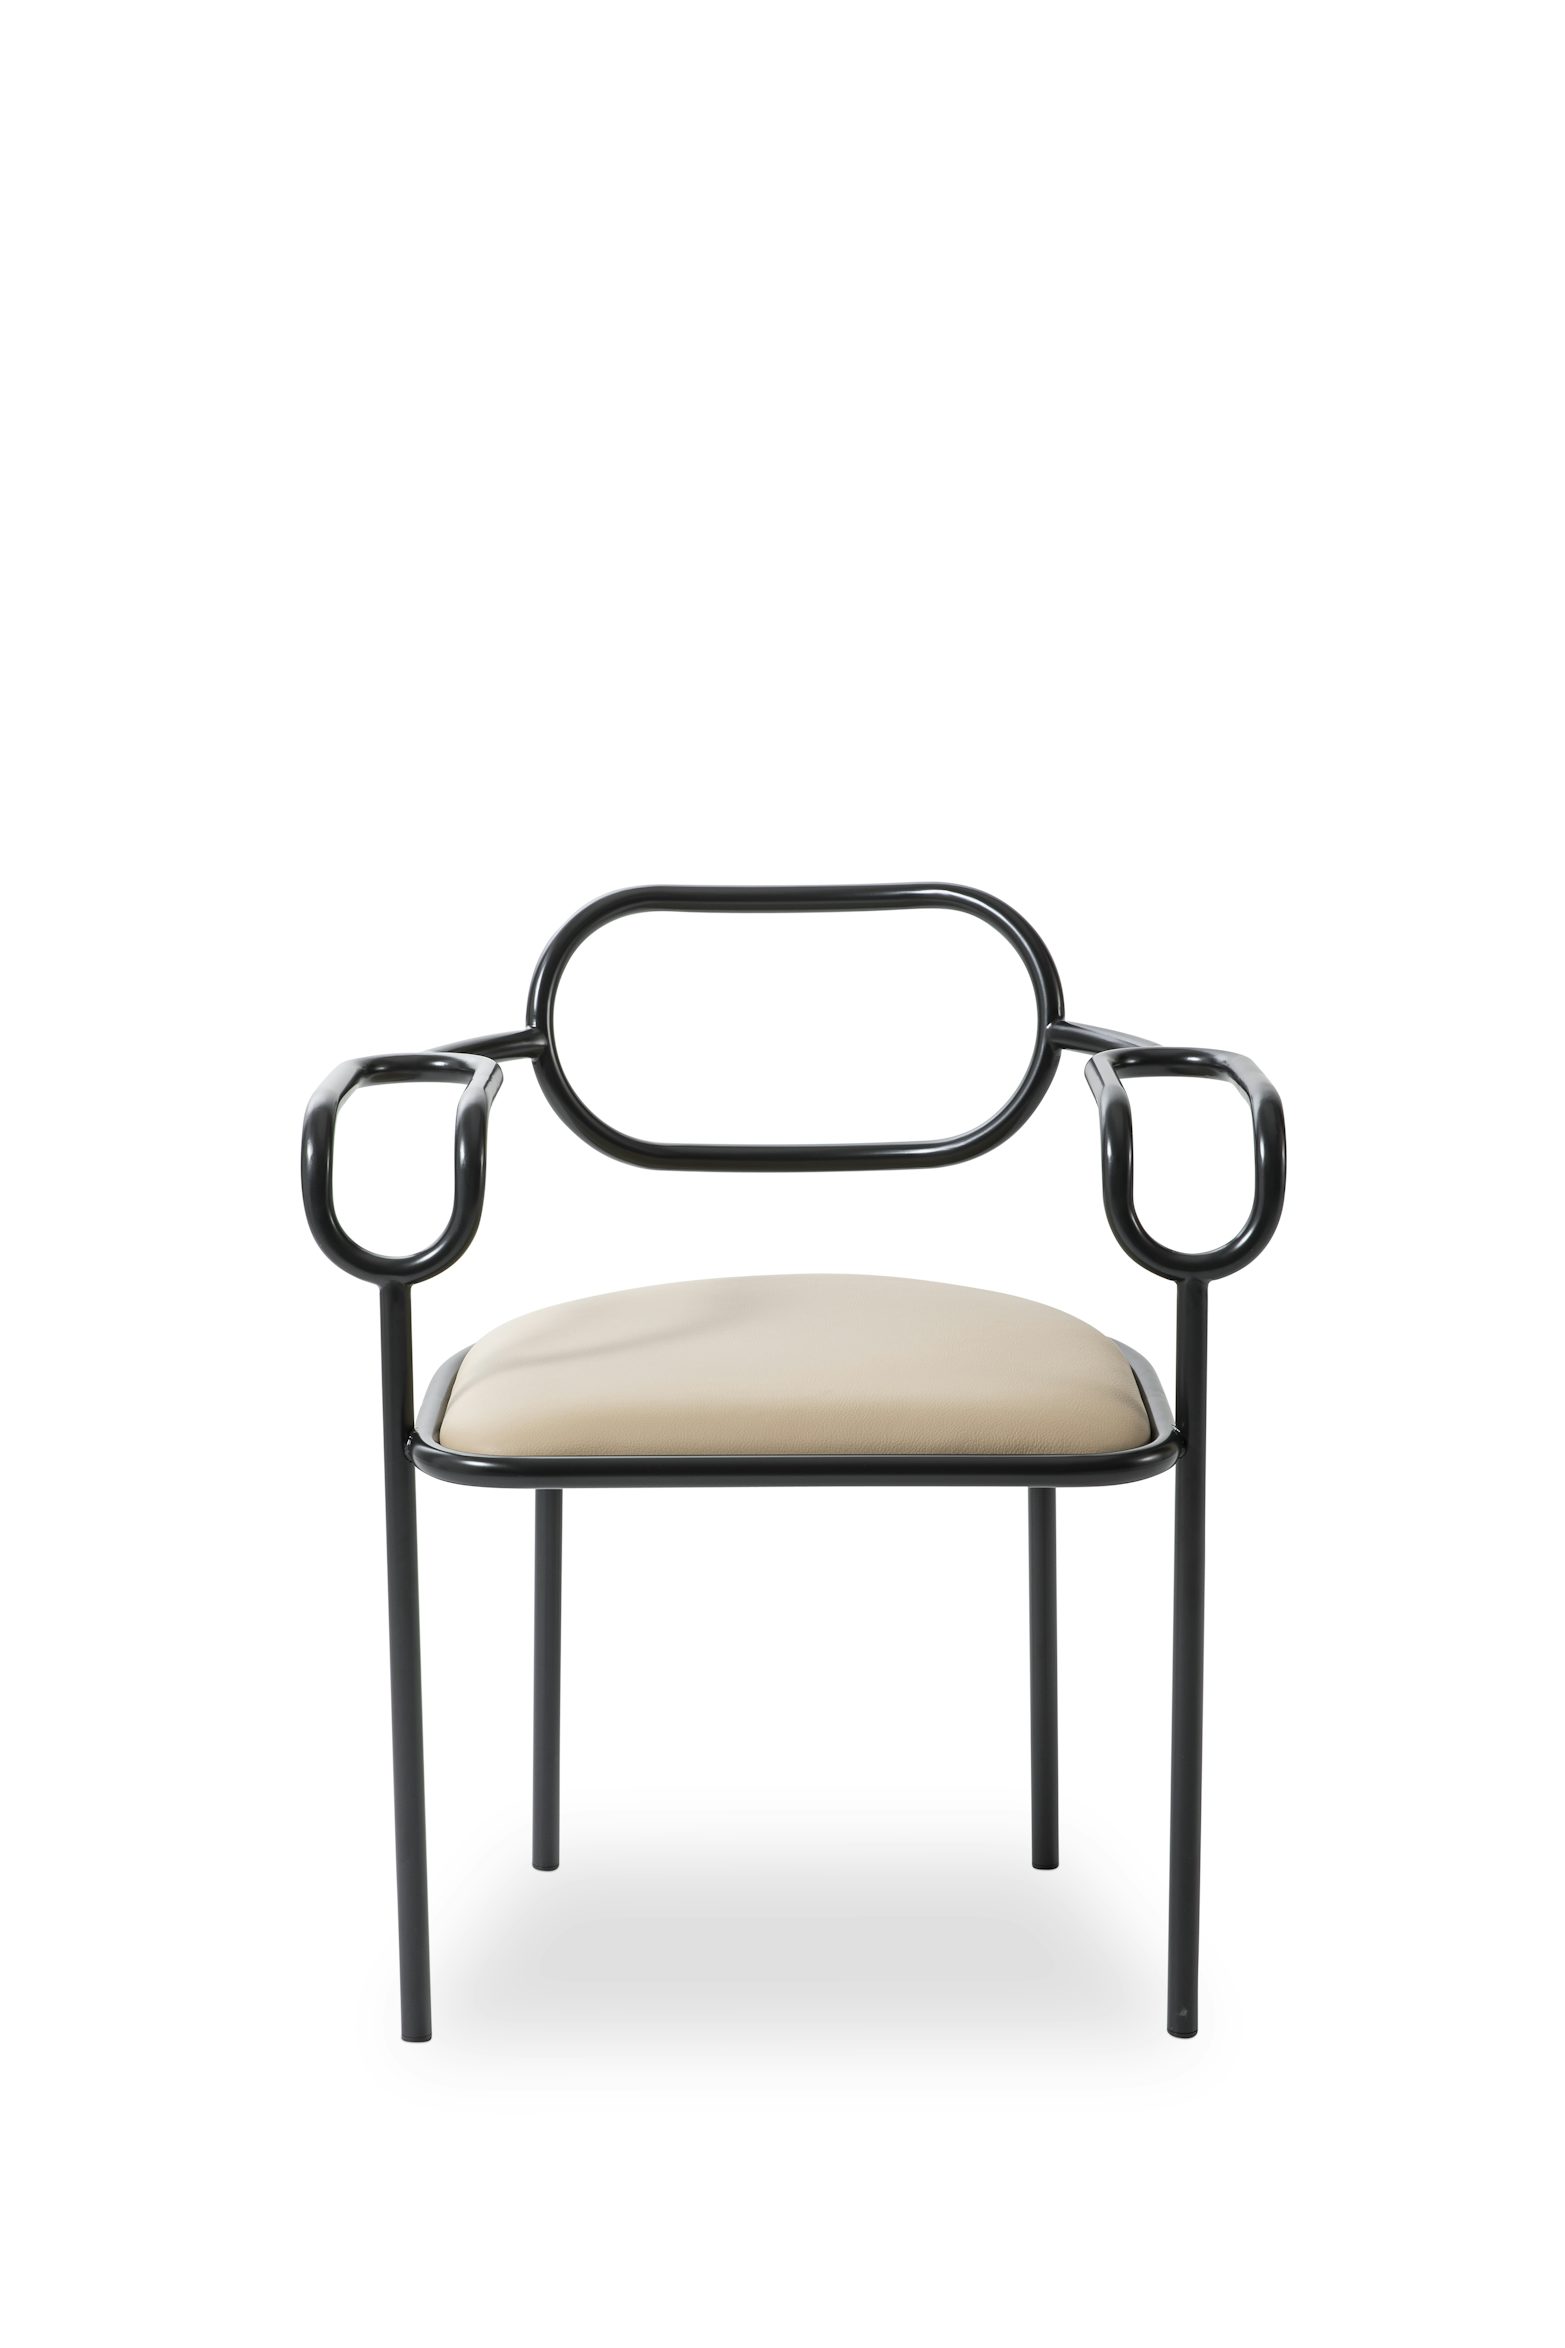 01 Chair Shiro Kuramata Cappellini 2